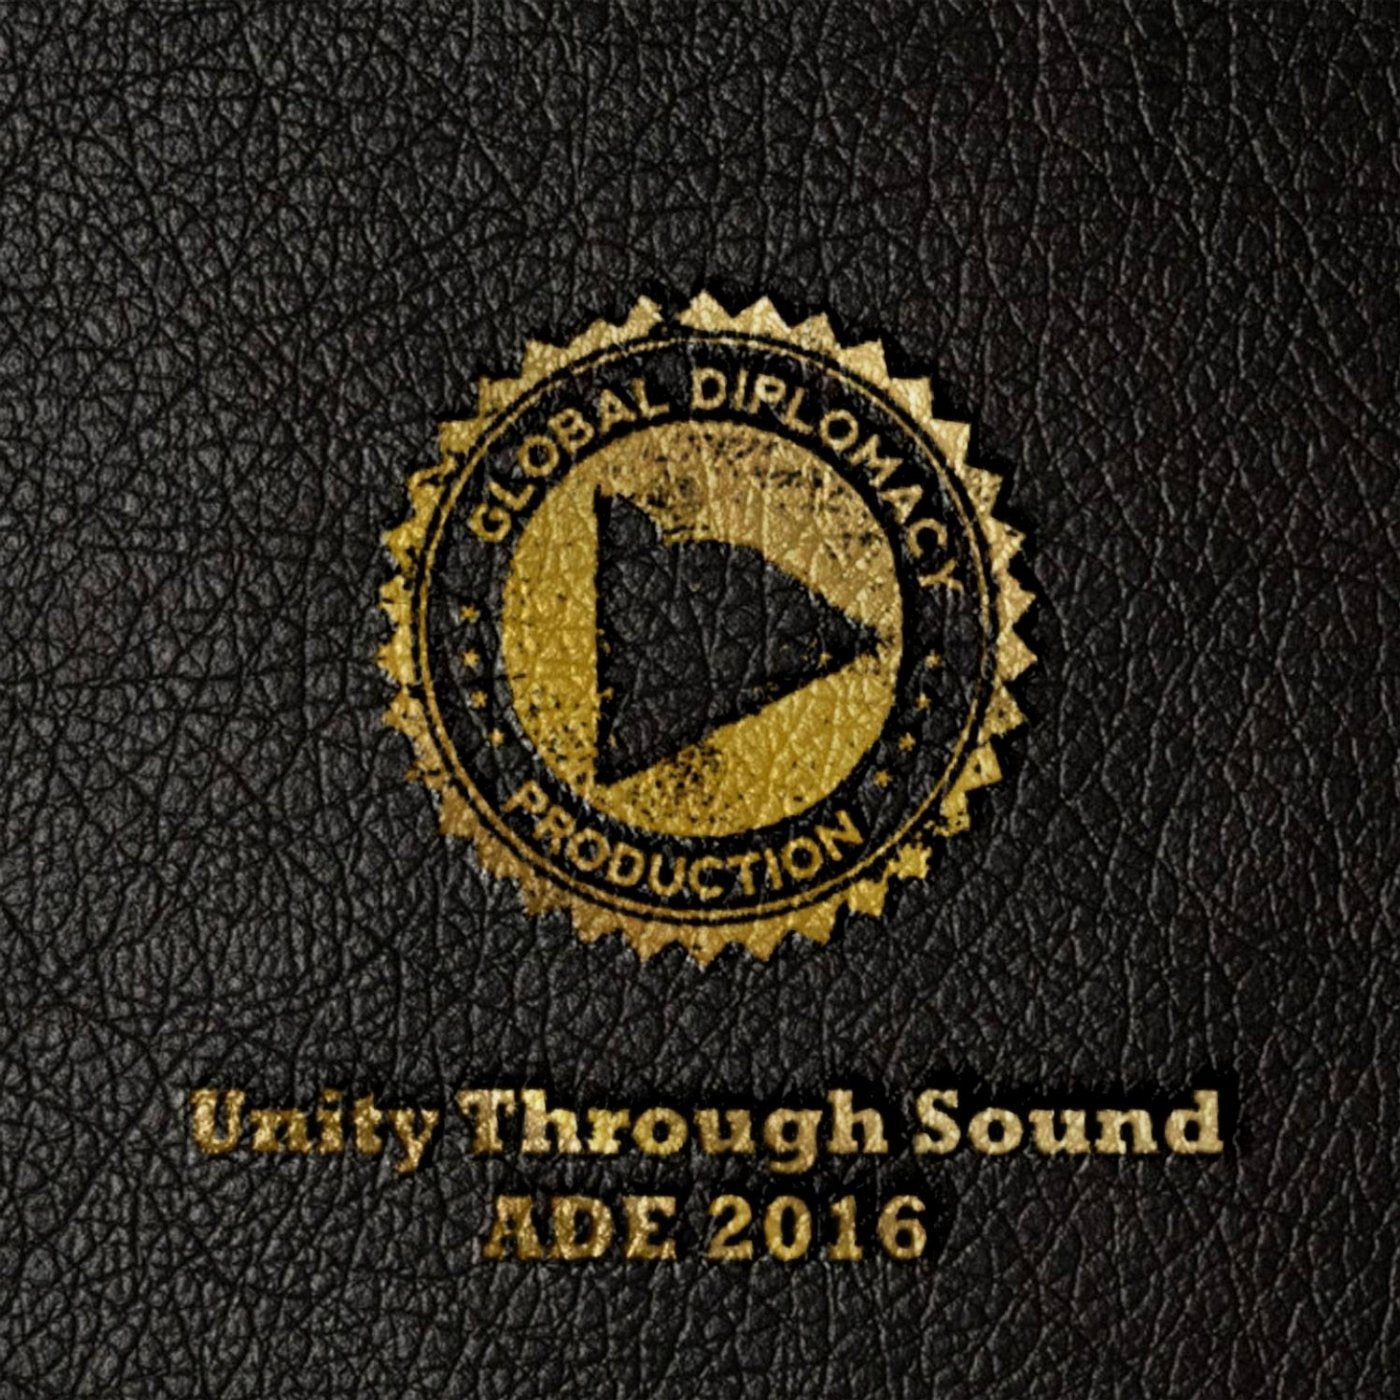 Unity Through Sound Ade 2016